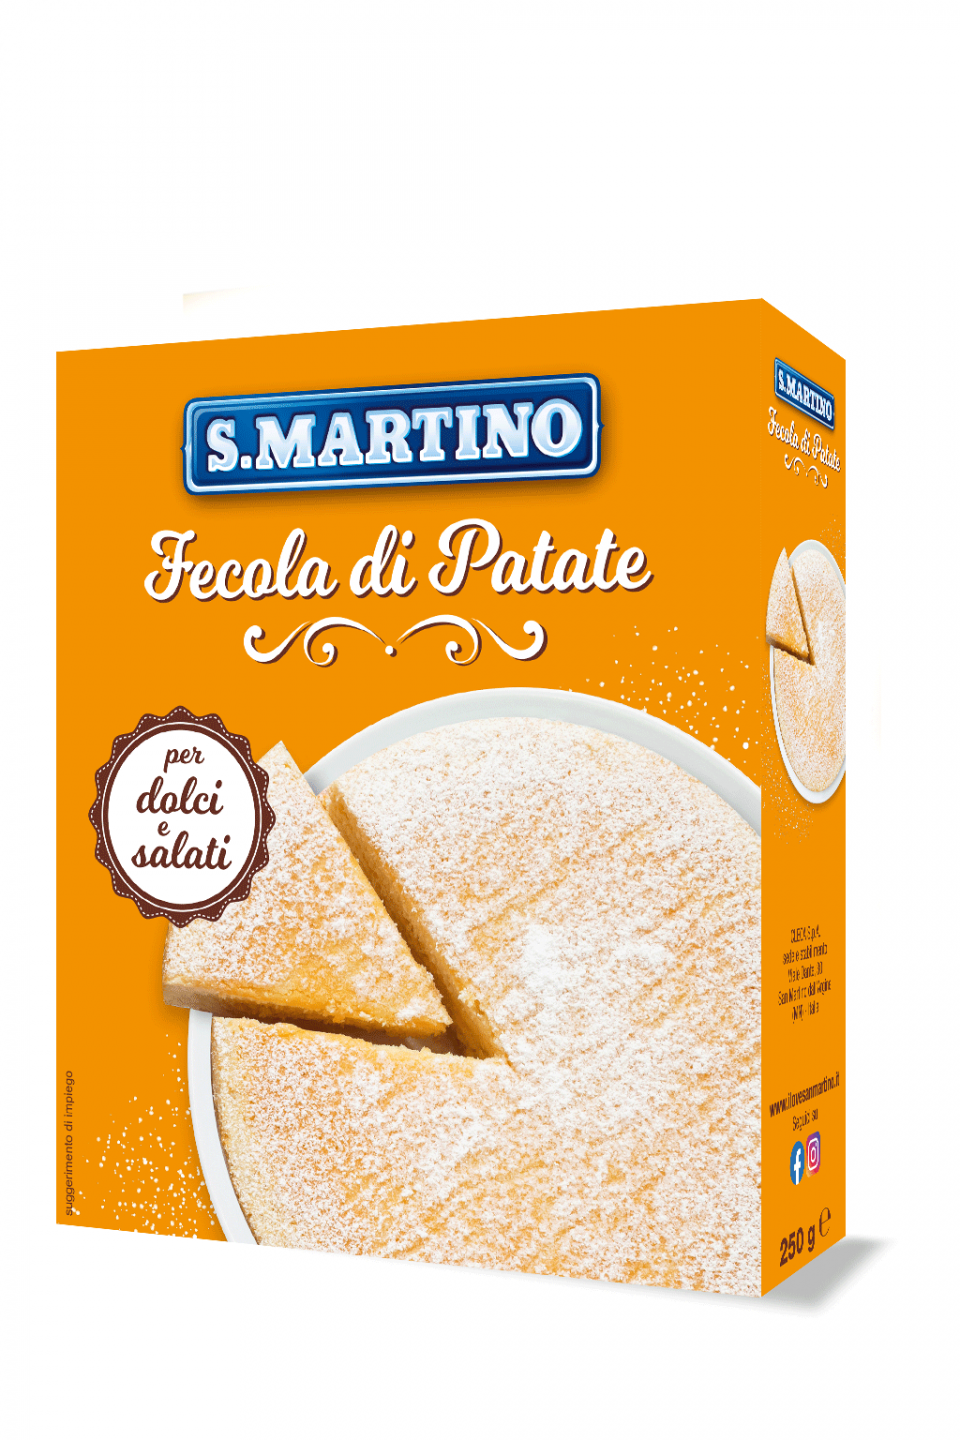 S.MARTINO Fecola di patate 250g